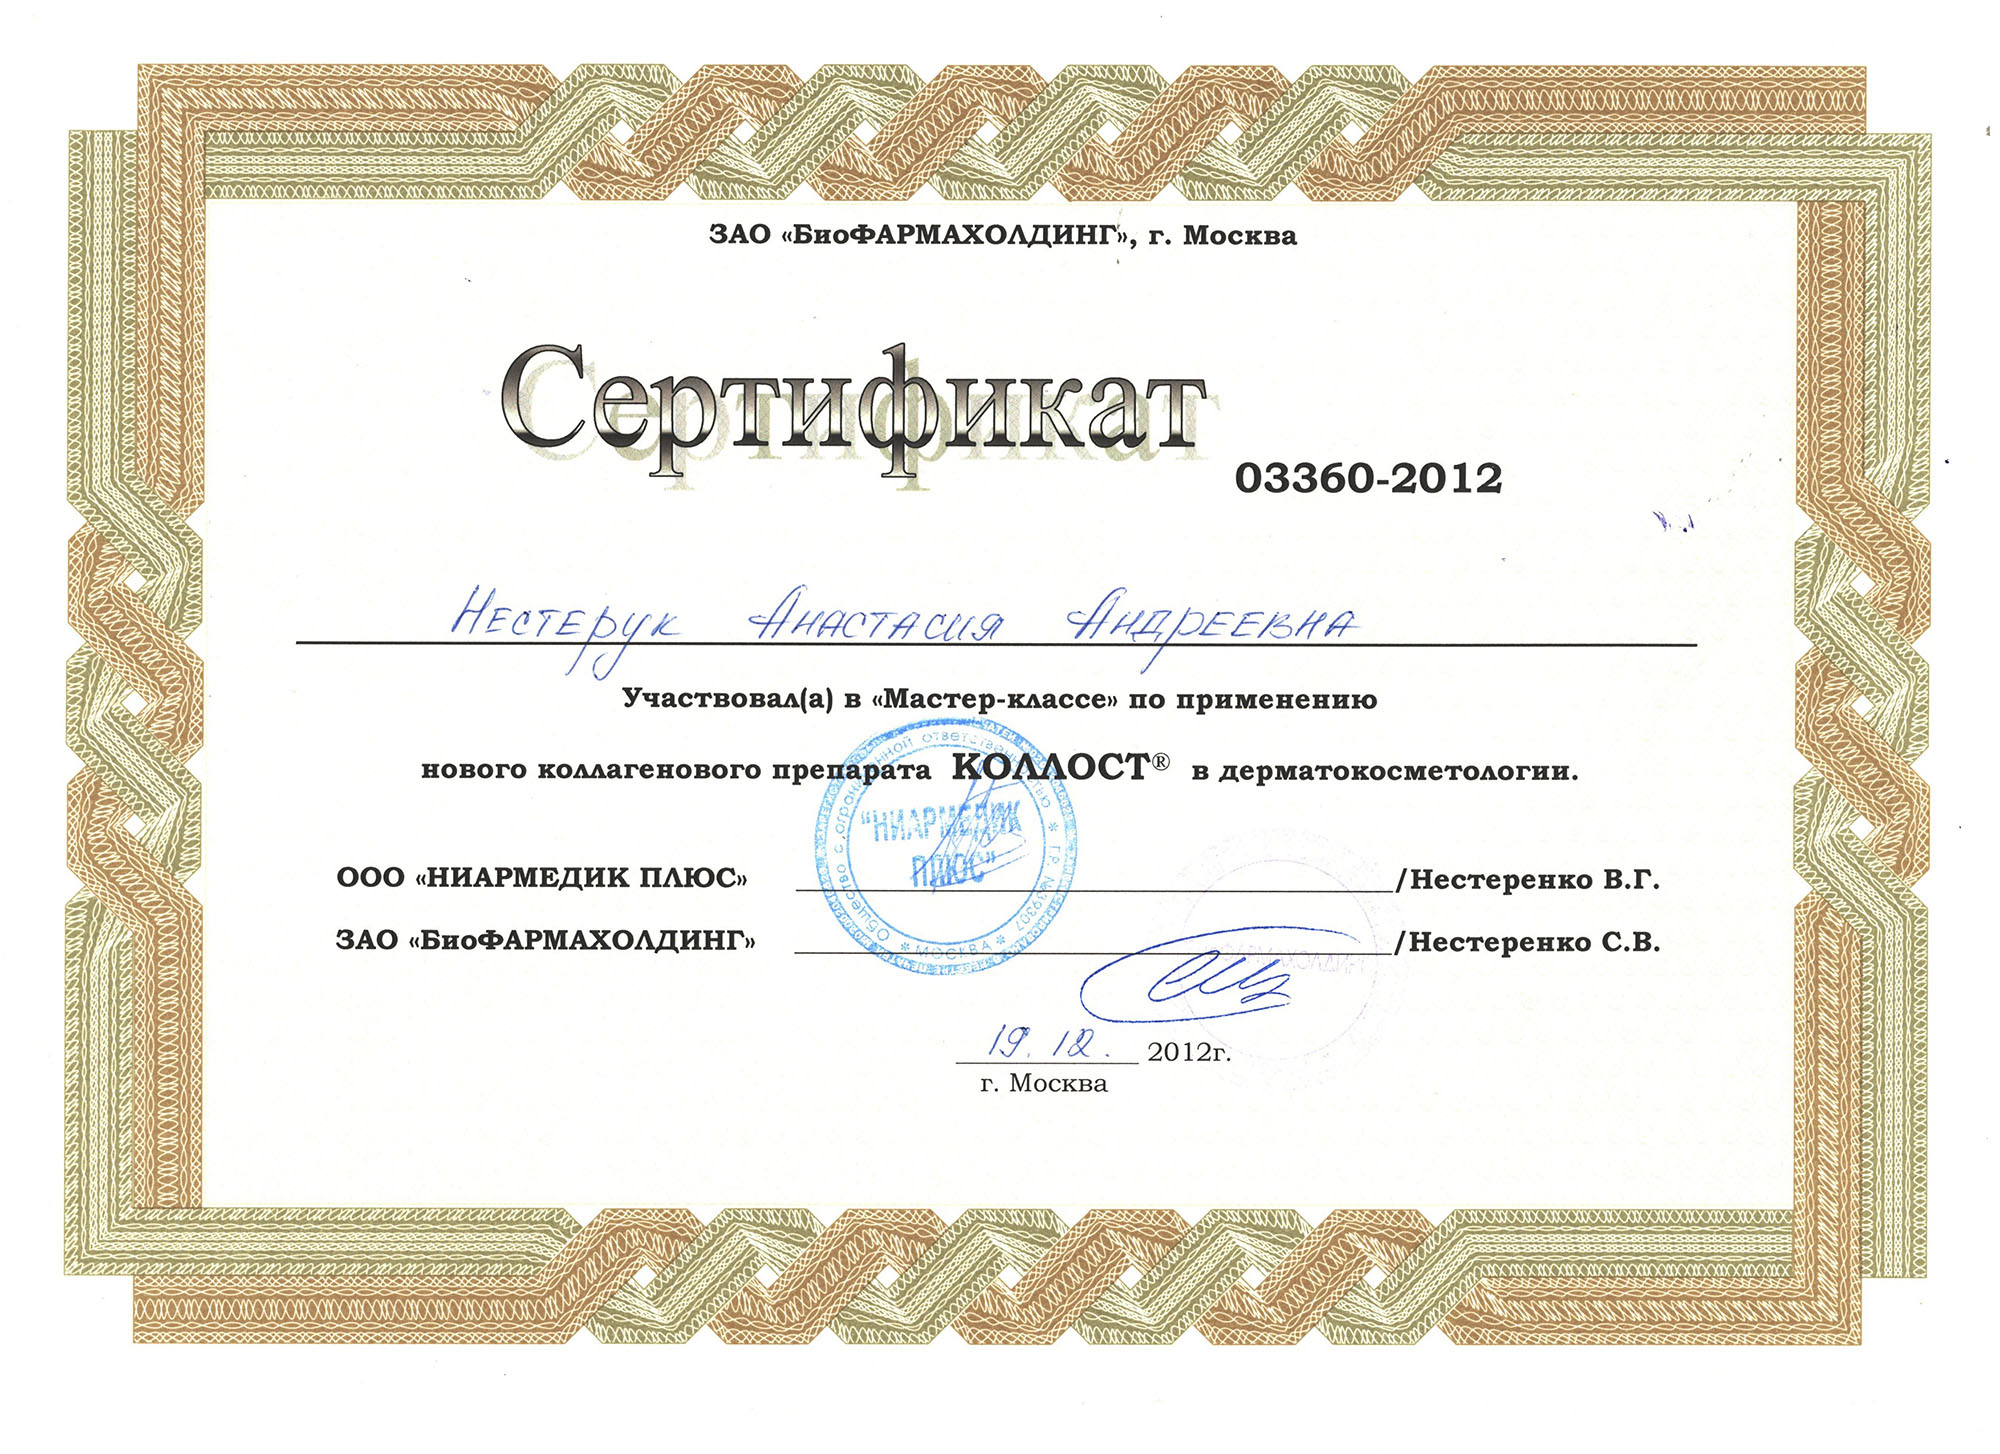 Сертификат — Мастер-класс по применению нового коллагенового препарата Коллост. Яблочко Анастасия Андреевна